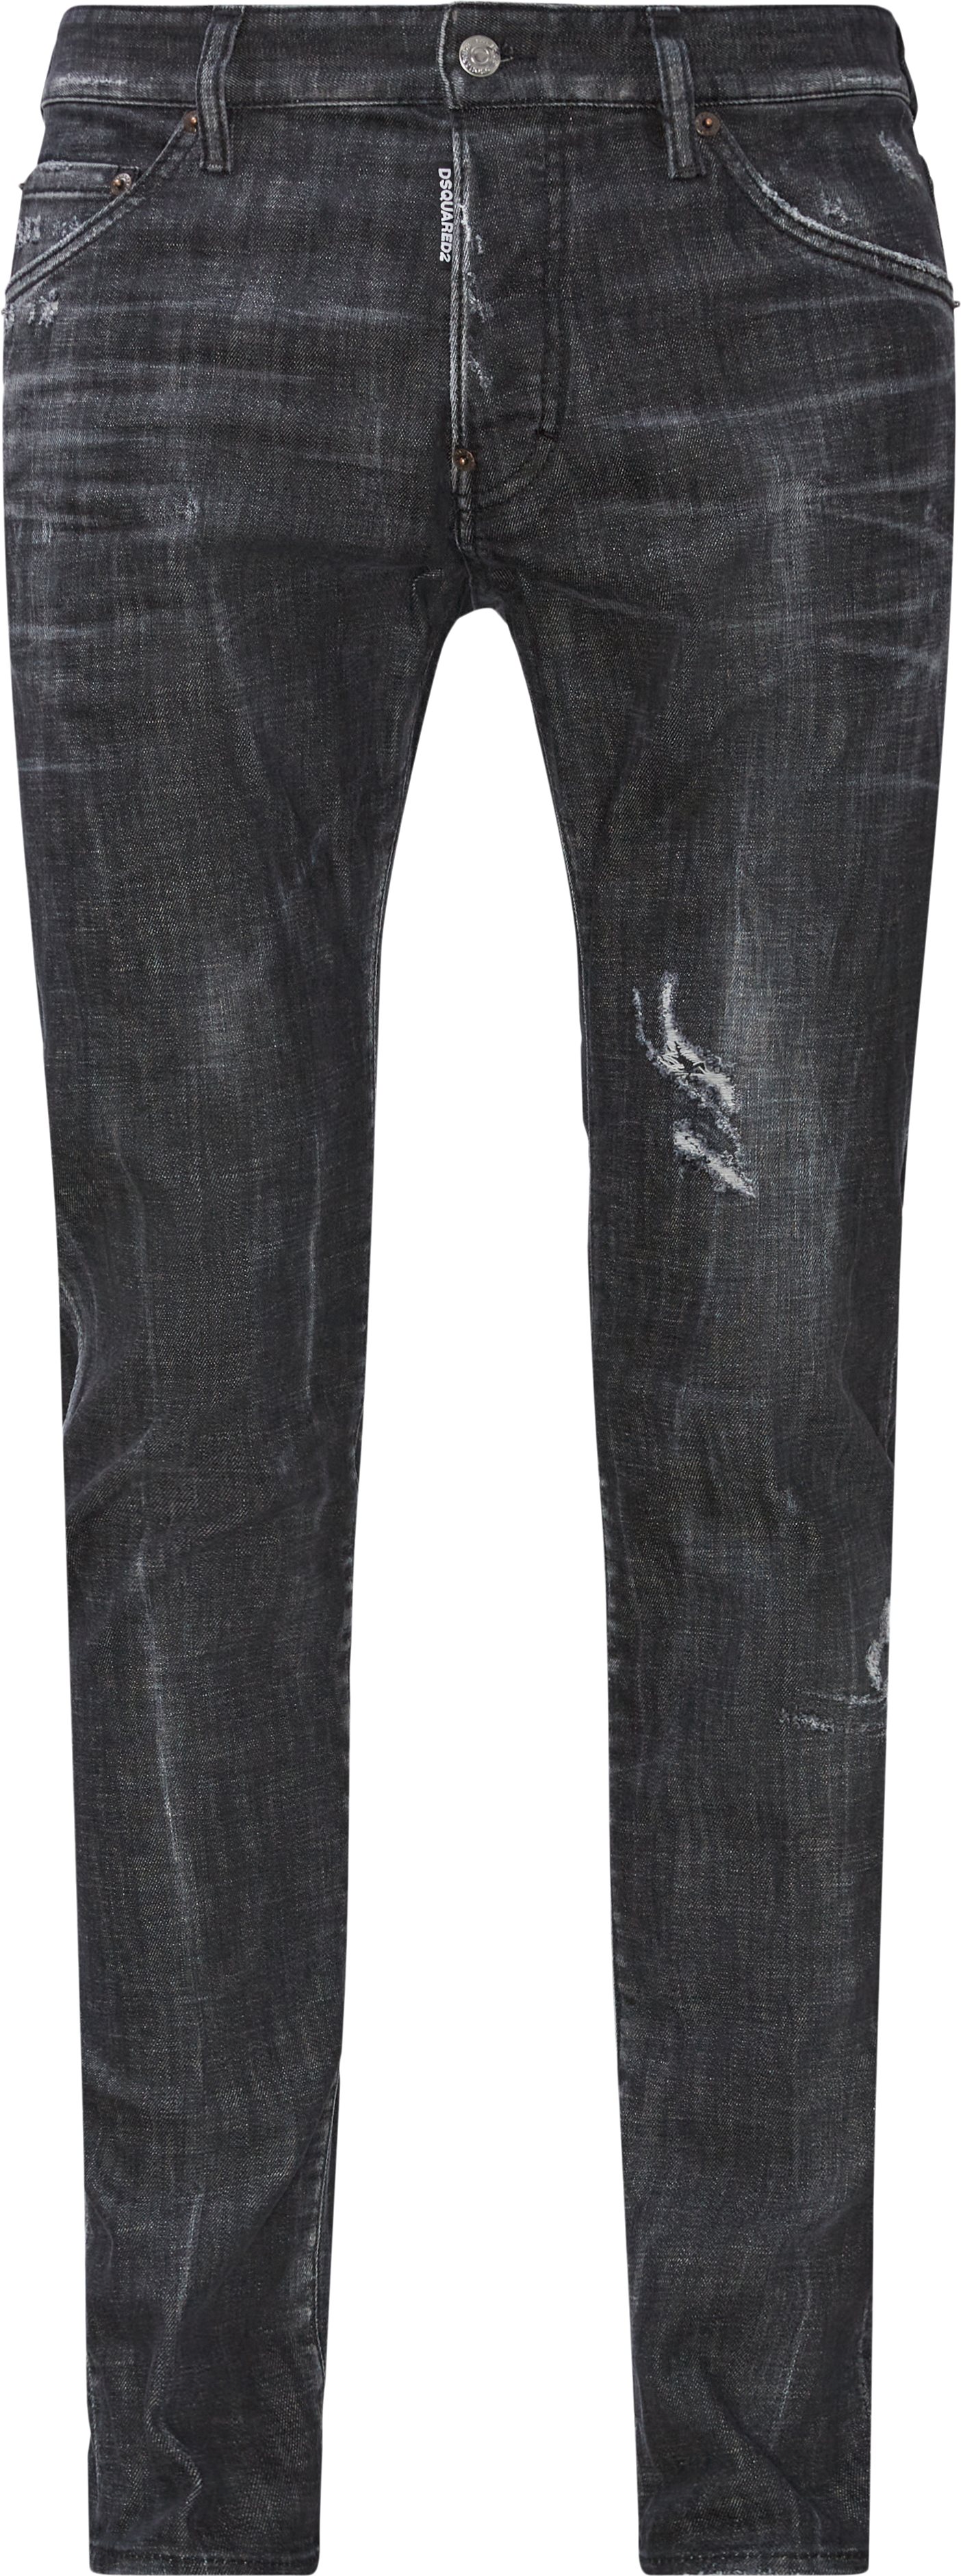 Dsquared2 Jeans S74LB1037 S30357 Black